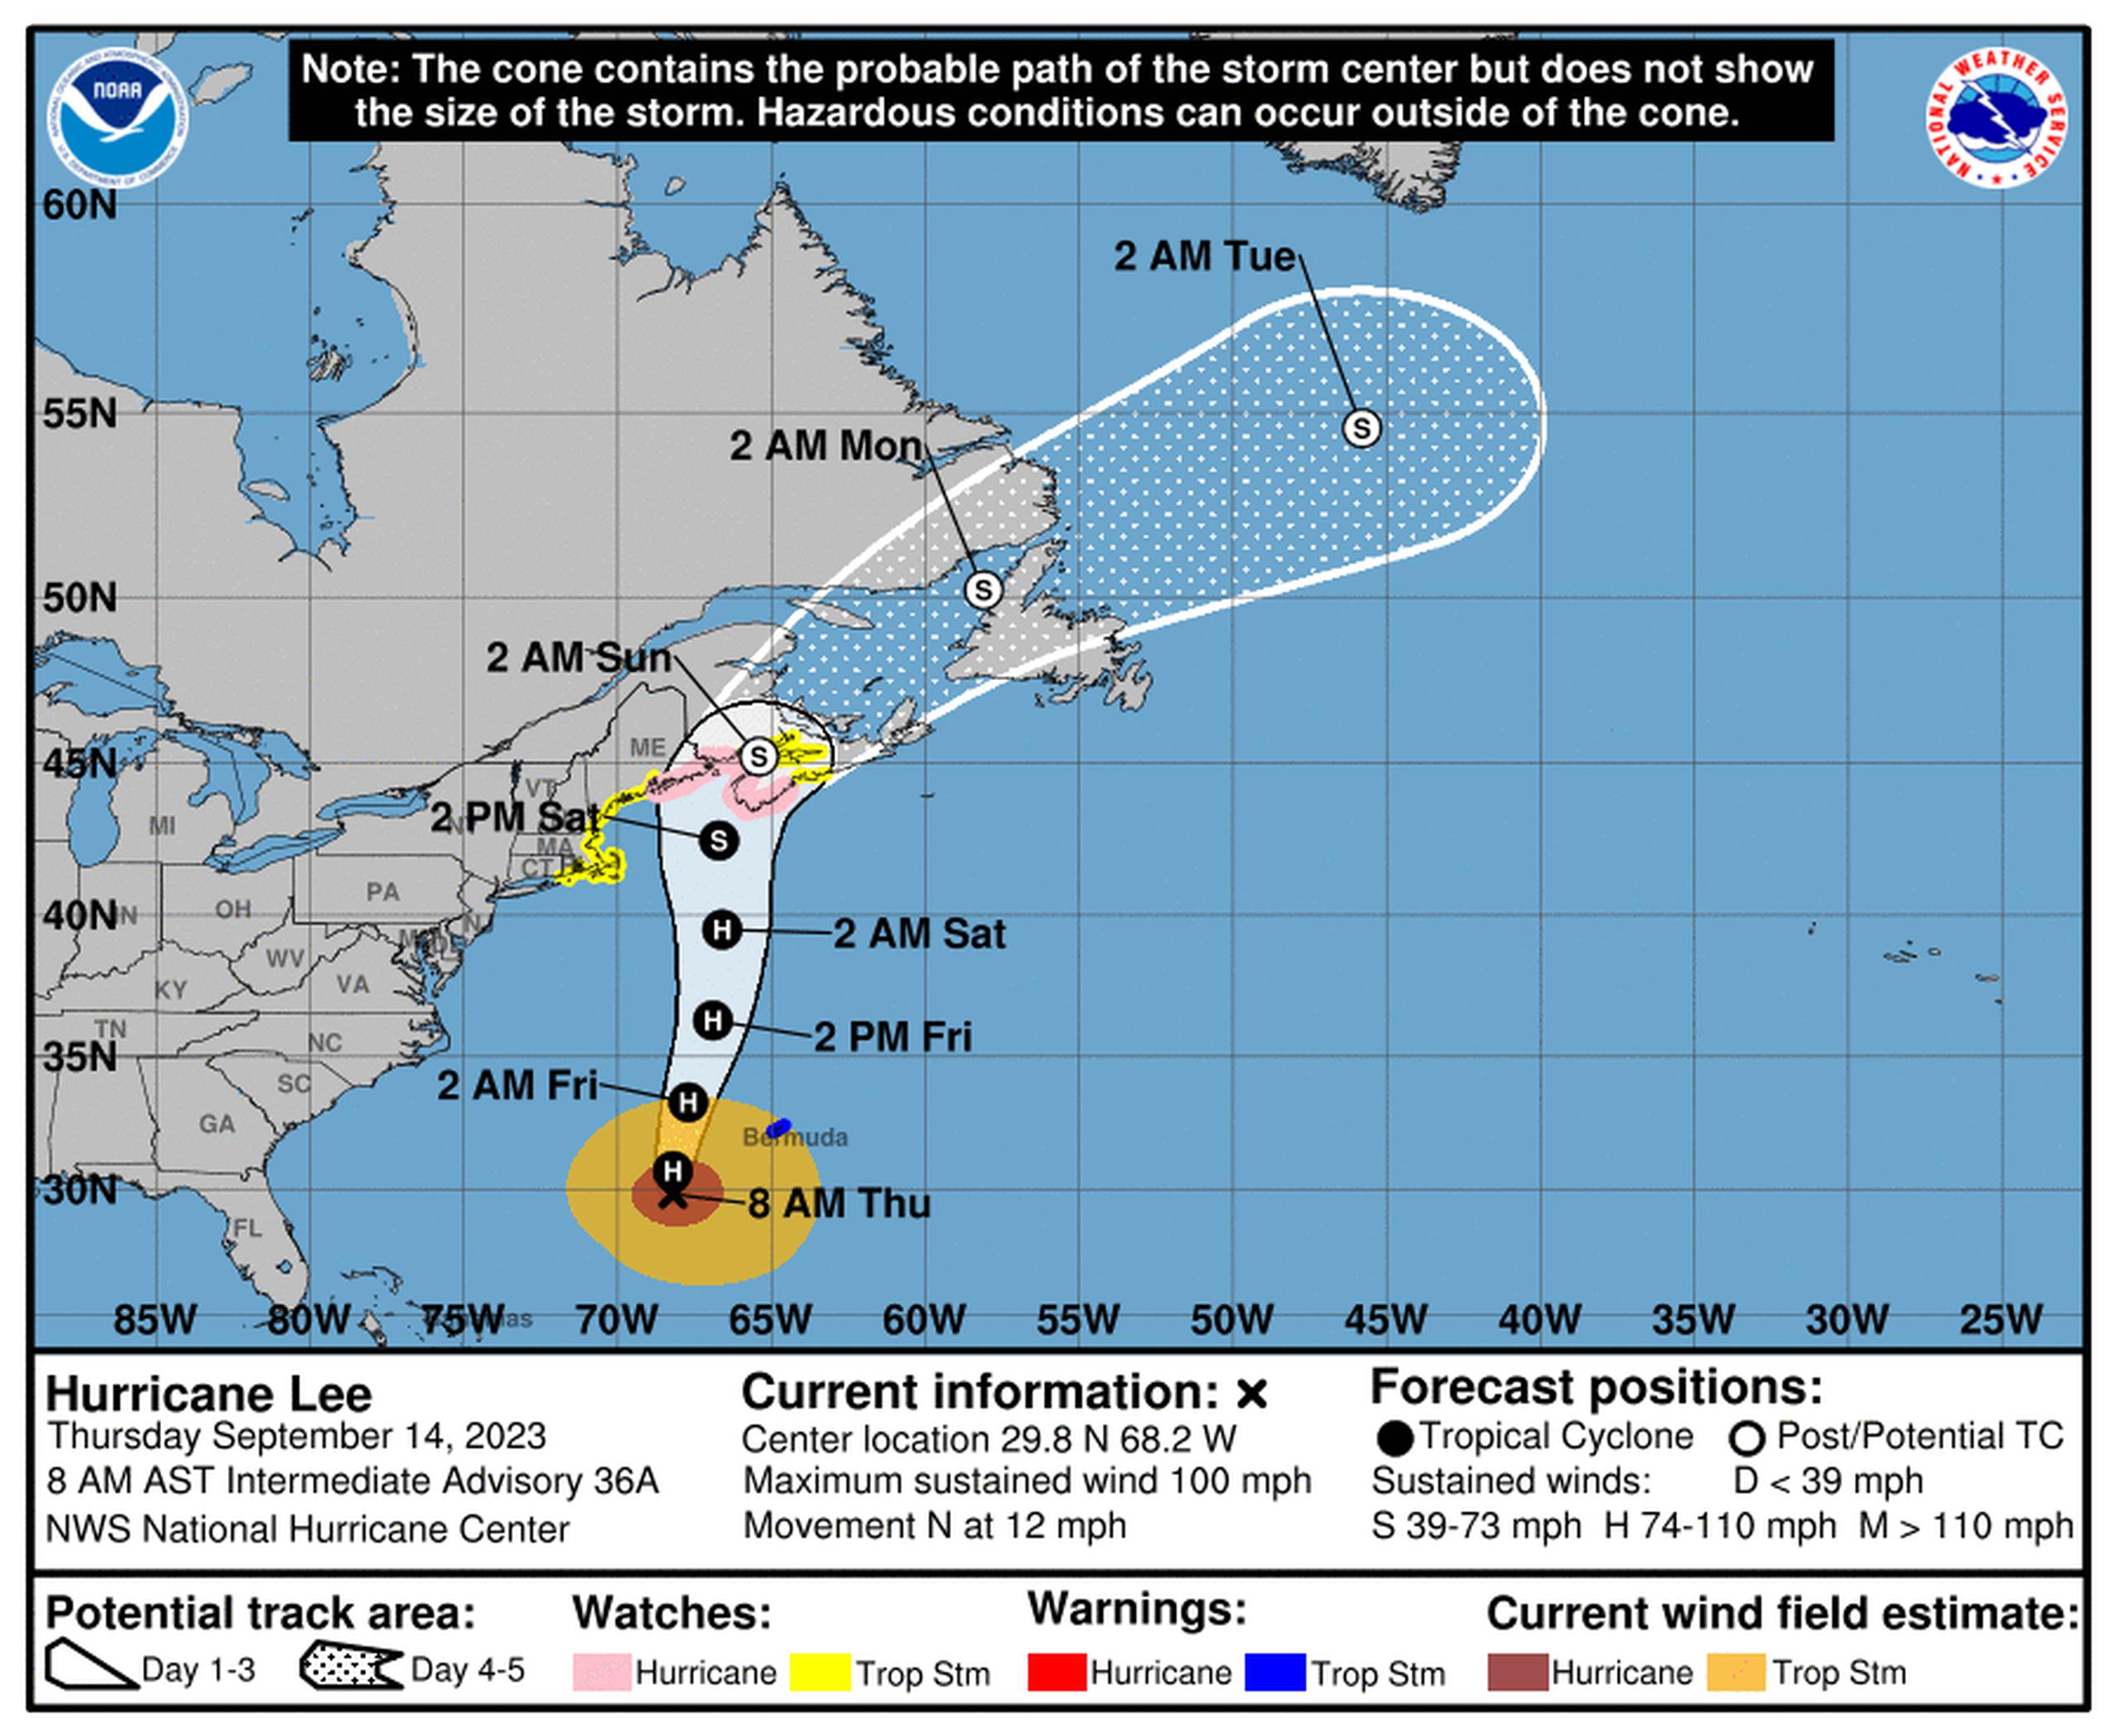 Pronóstico del huracán Lee emitido a las 8:00 de la mañana del 14 de septiembre de 2023.